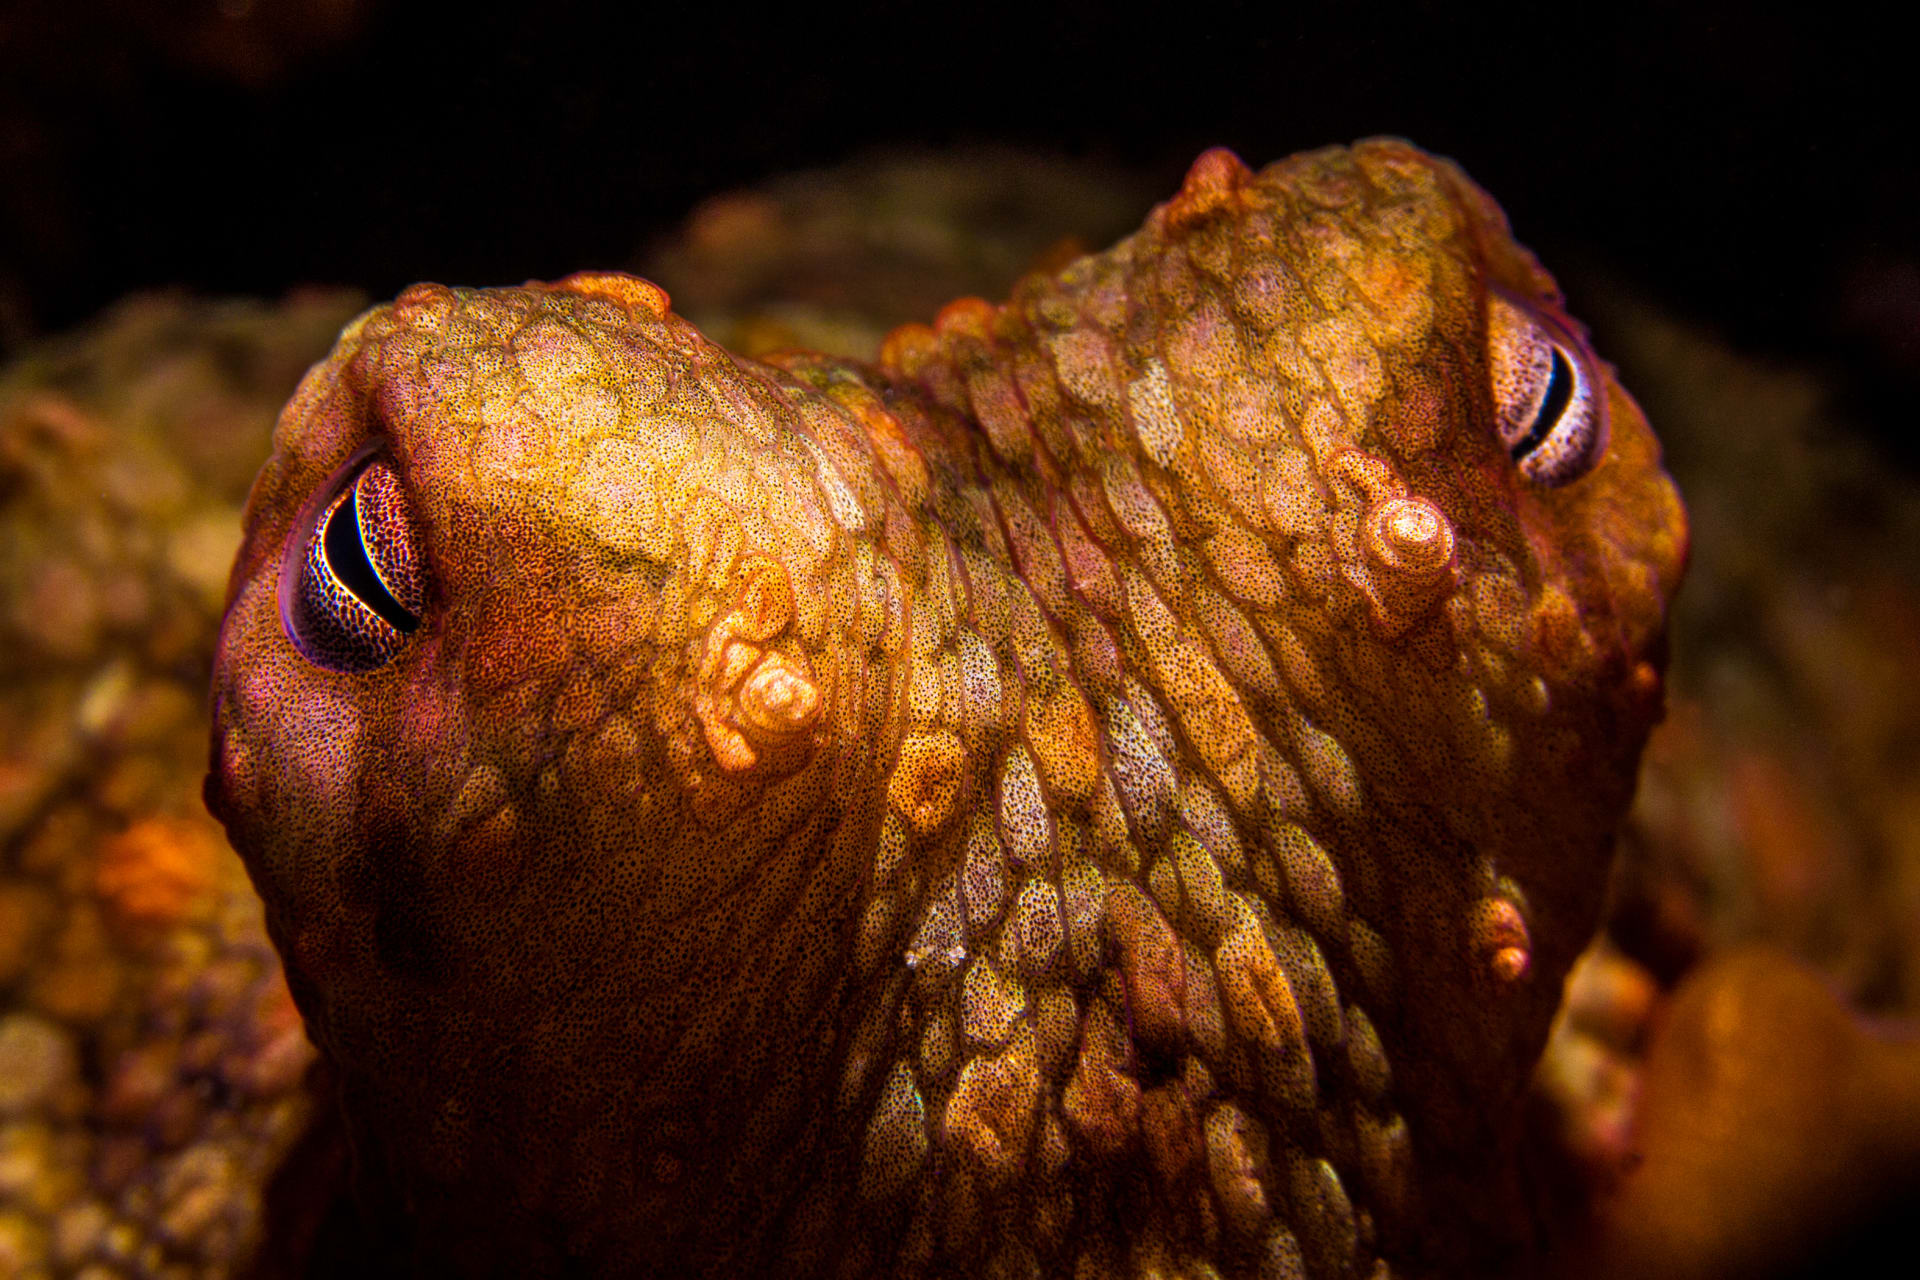 Samice chobotnice sydneyské se podle vědců brání vlezlým samcům tak, že na ně hází bahno.